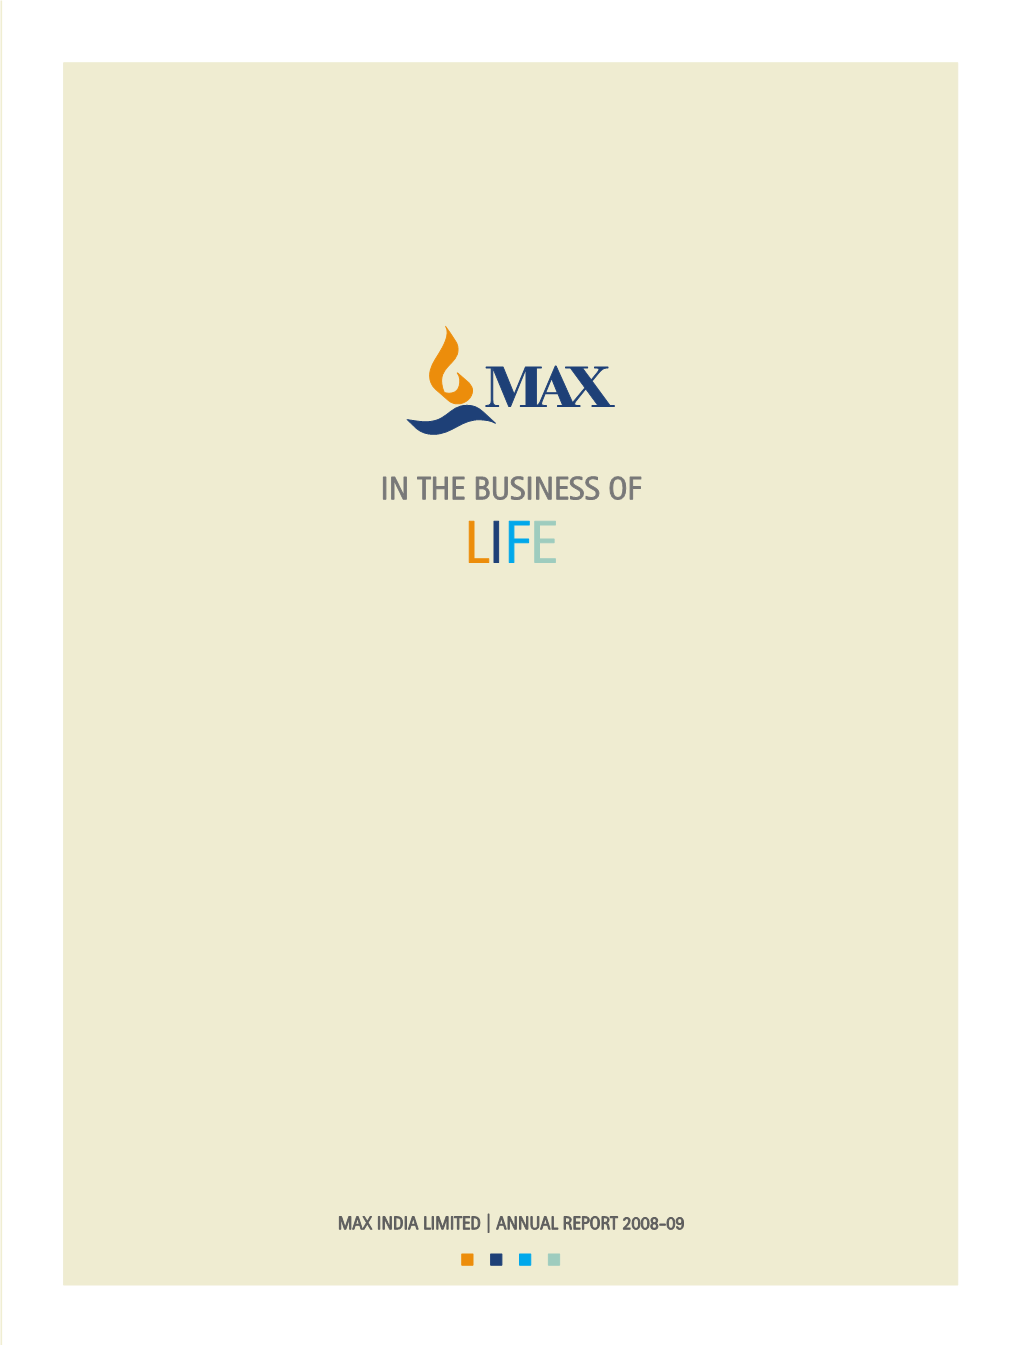 Max Healthcare Institute Ltd